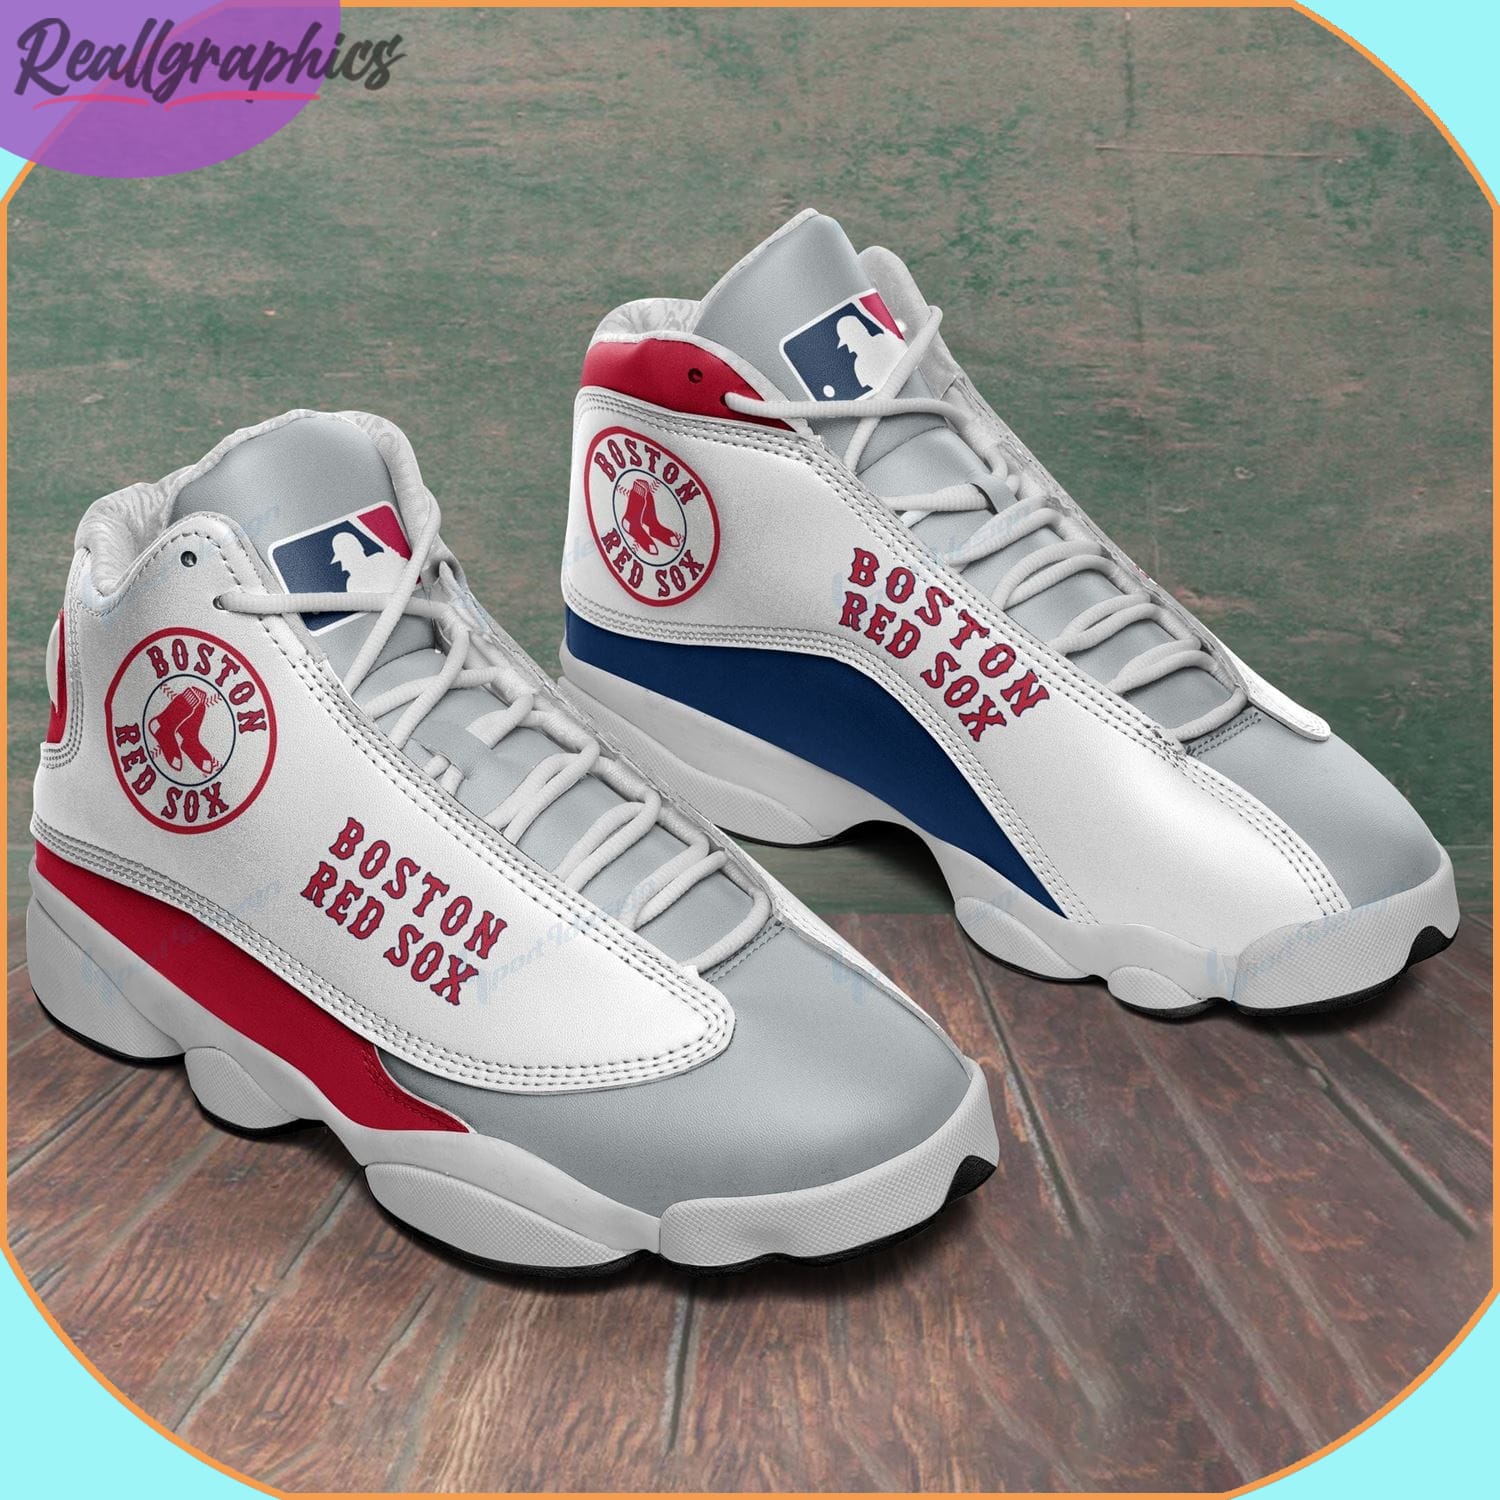 Boston Red Sox AJordan 13 Sneakers